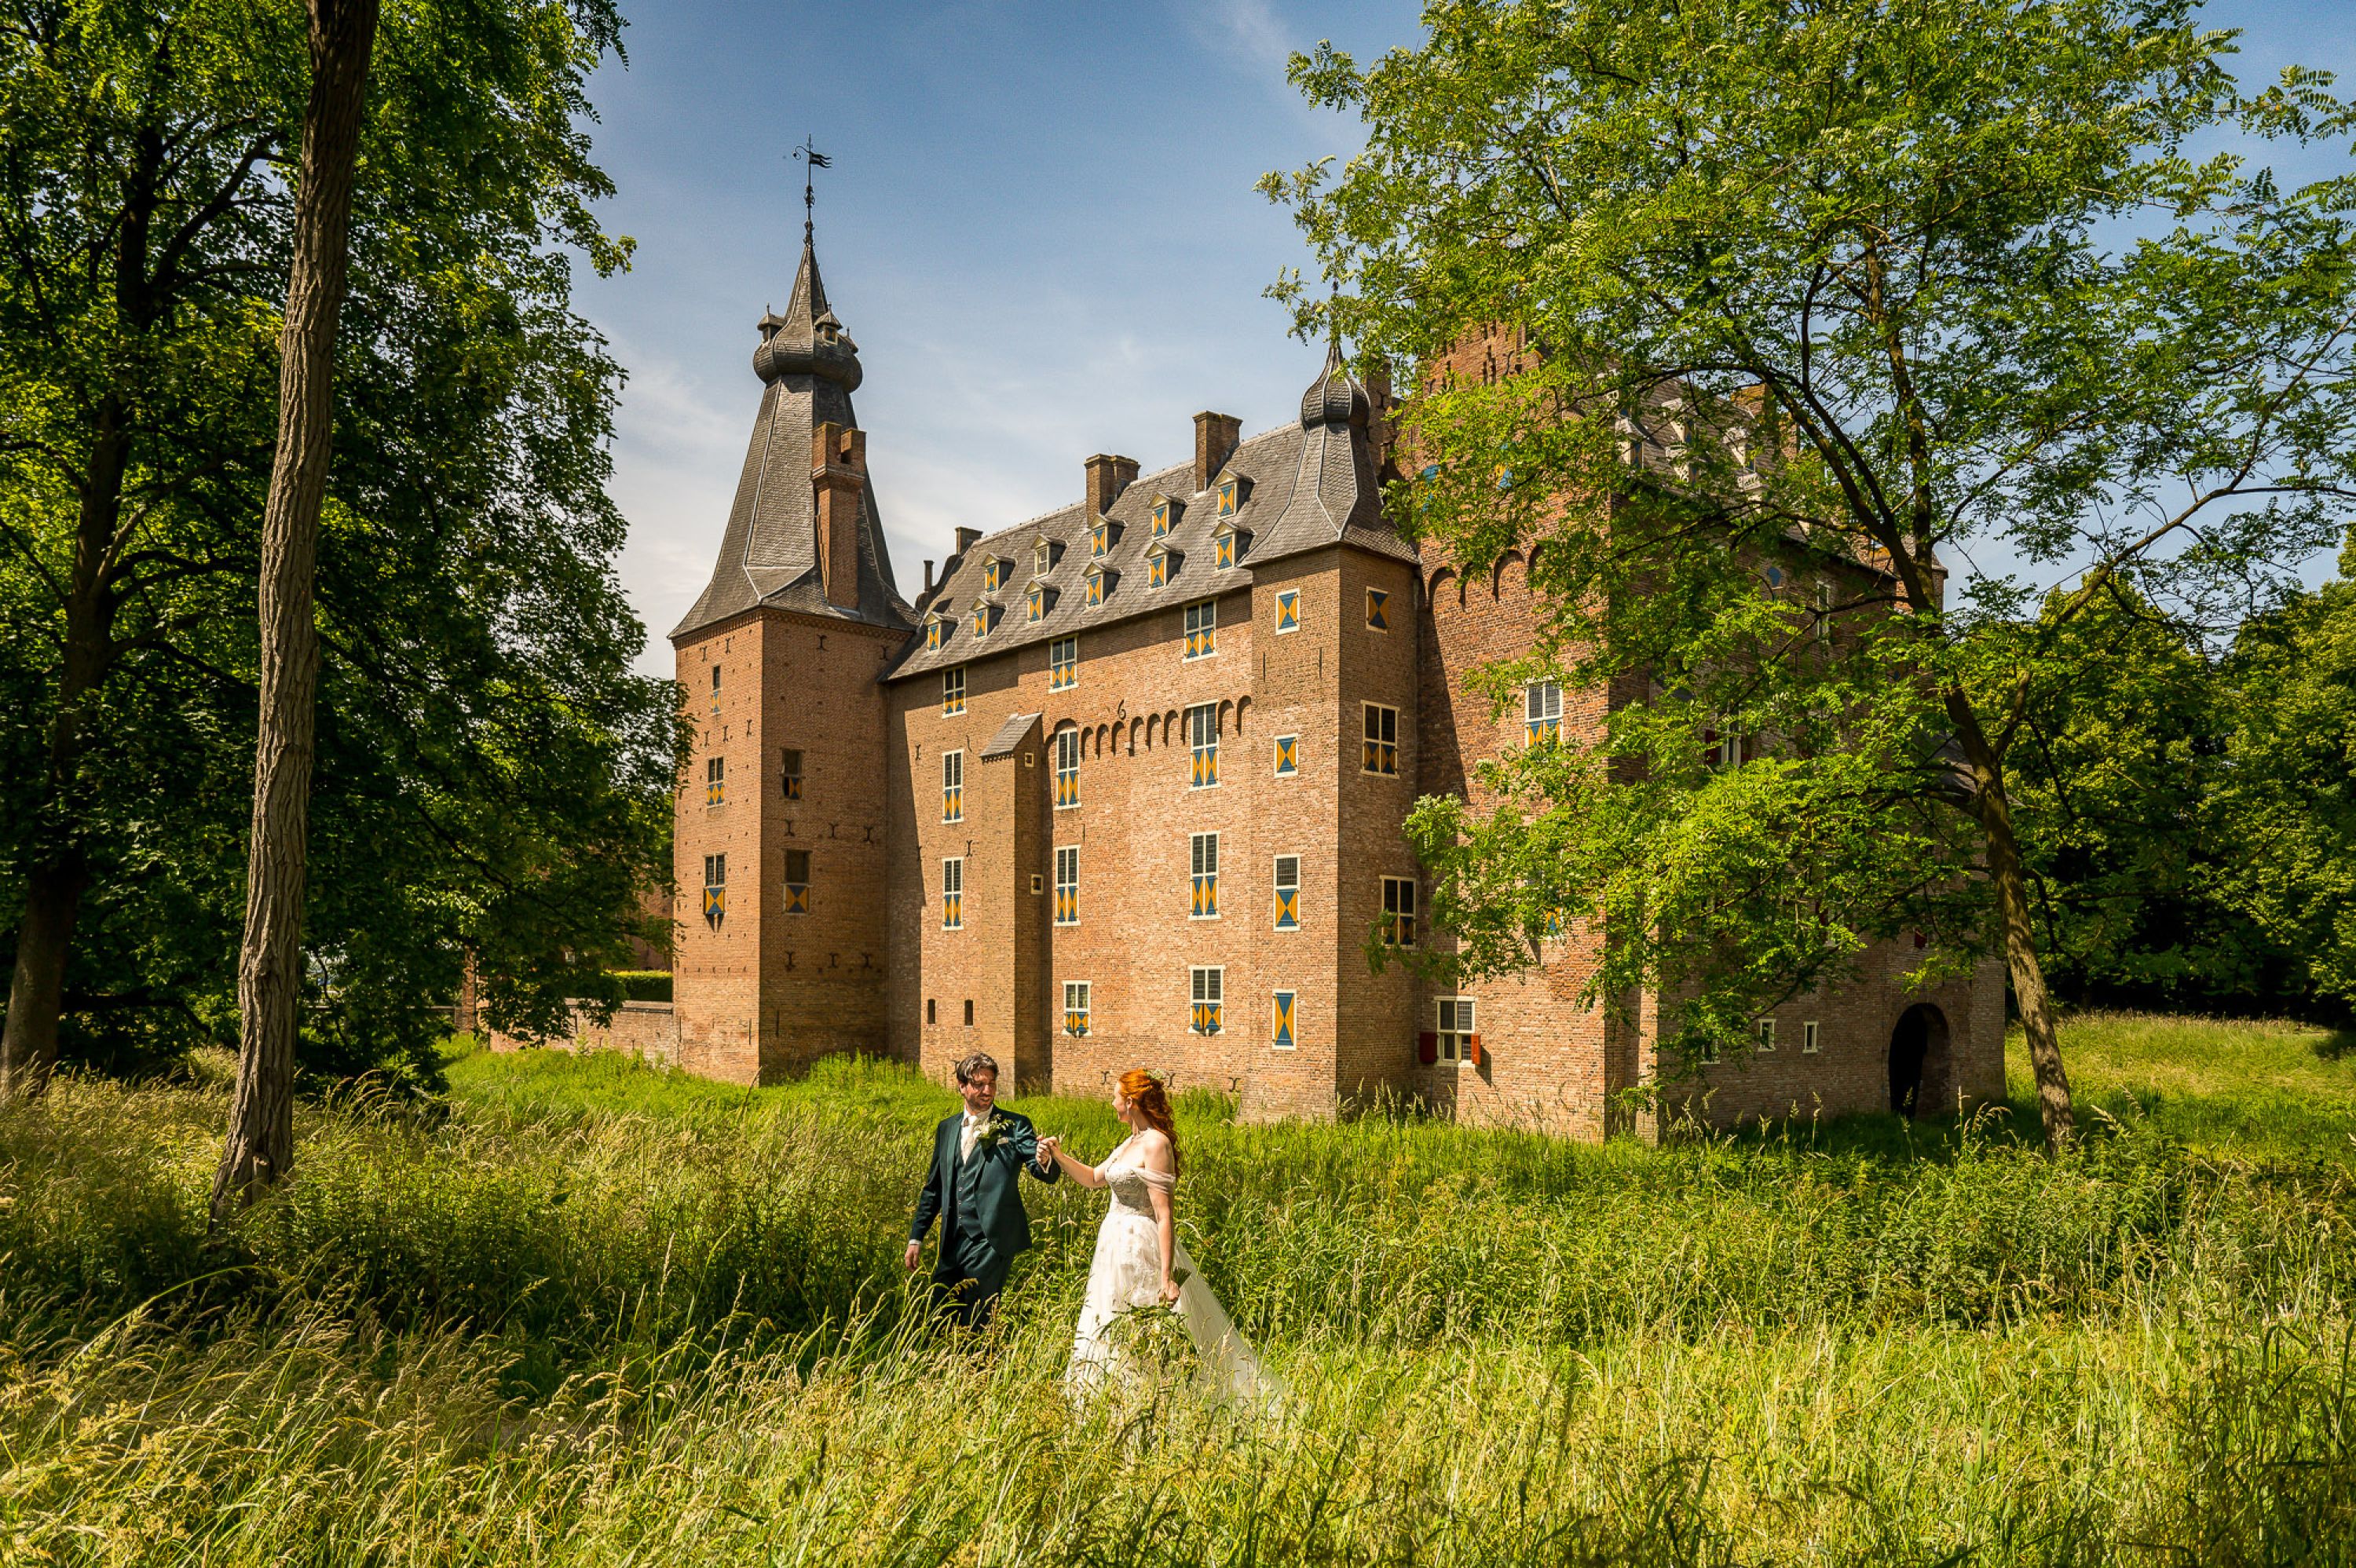 Joost-Caspara-Jan-van-de-Maat-Fotografie-Bruidsfotografie-Trouwfotografie--Bruiloft-Trouwen-kasteel-Doorwerth